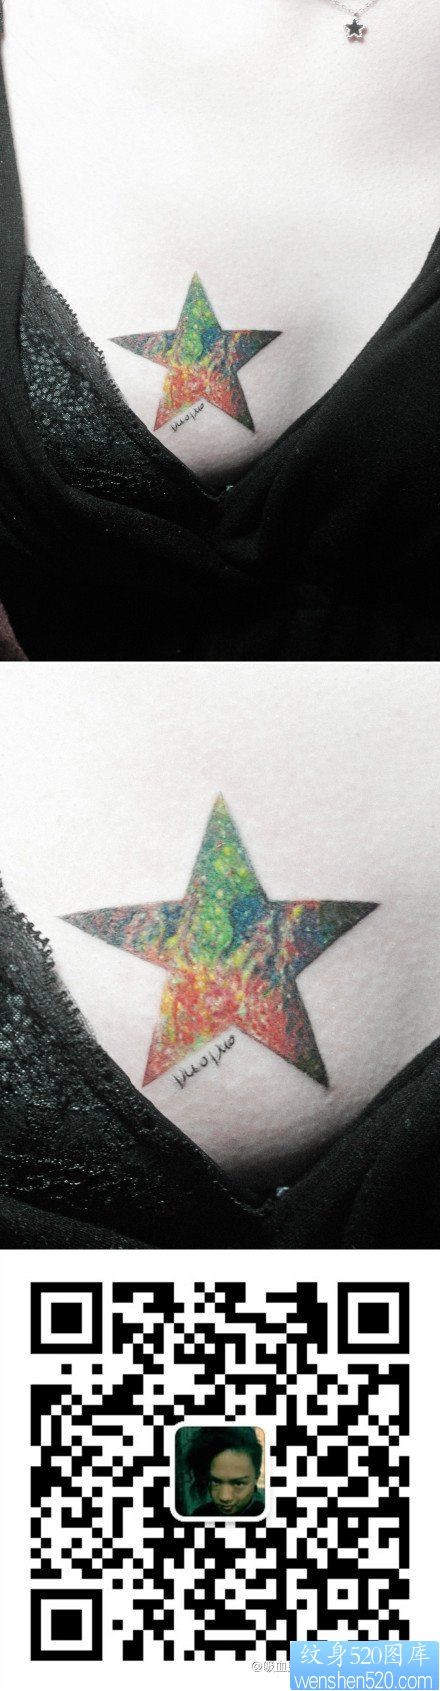 女人胸部一幅精美的彩色星空五角星纹身图片